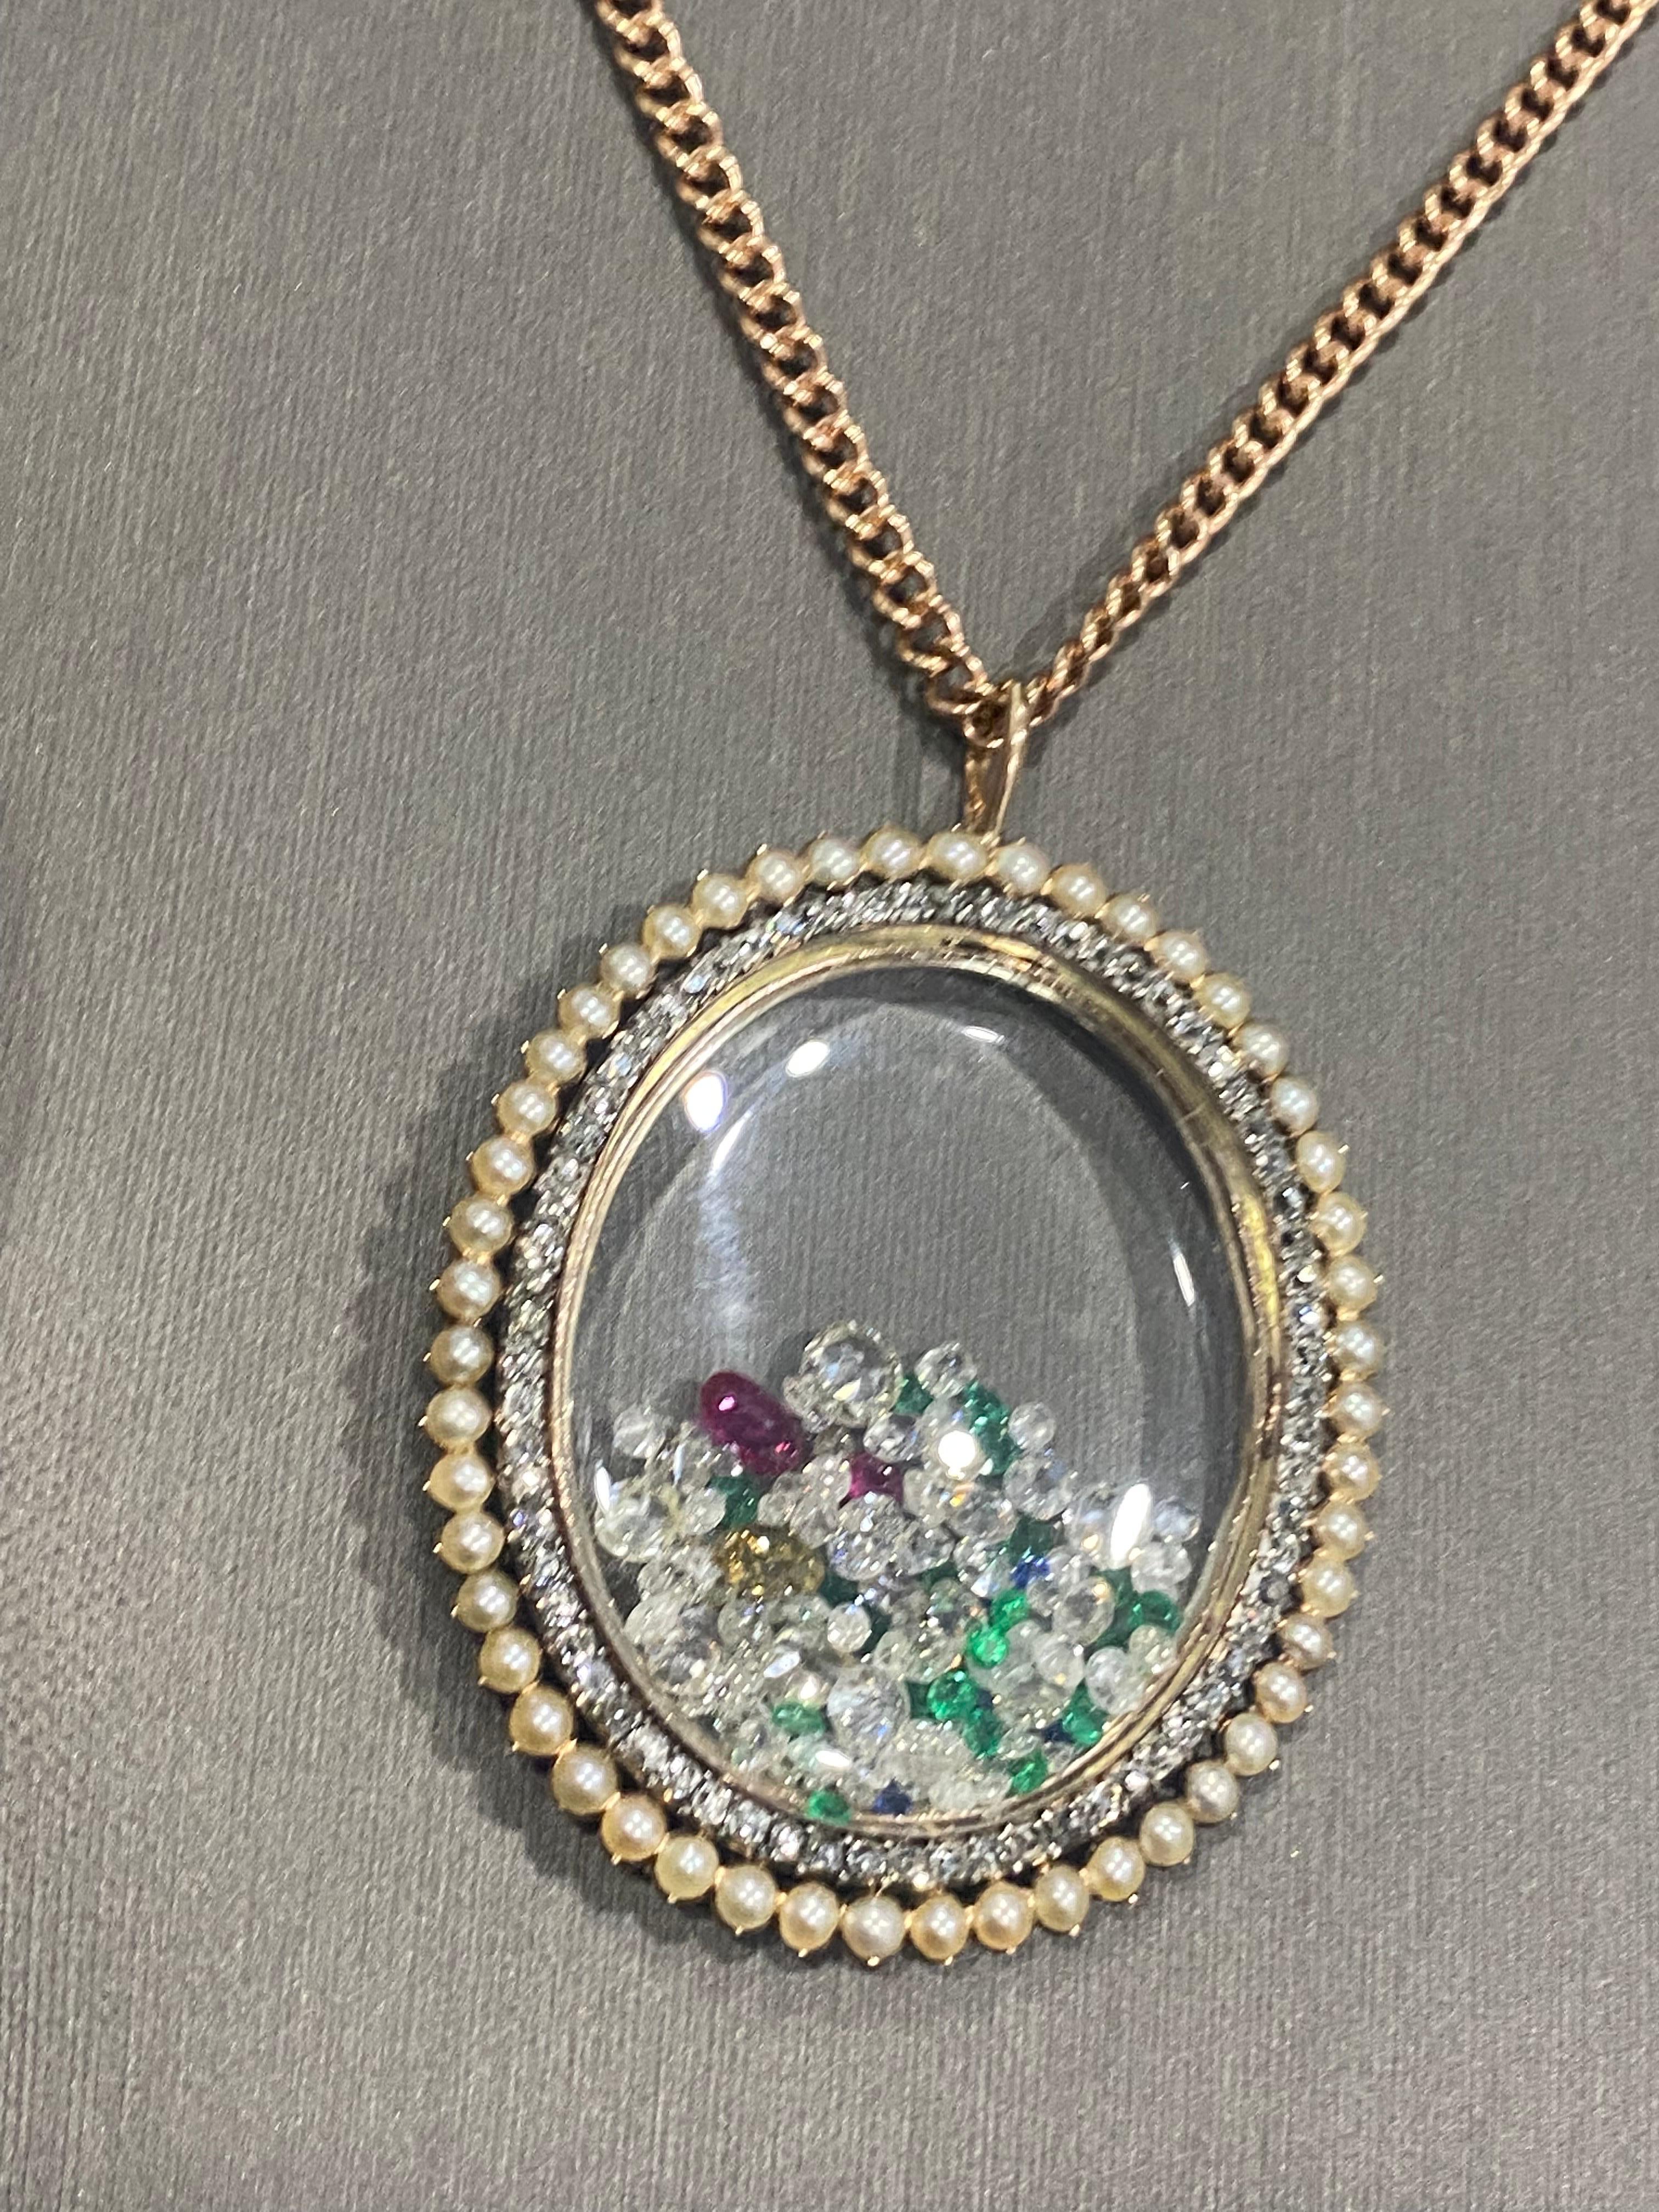 L'une de nos dernières créations préférées. Un trésor unique en son genre. Ce médaillon datant de la période victorienne, vers les années 1880, est entouré d'un grand diamant ovale de taille ancienne (2,50 CTW) et de 50 perles. 
Il a été transformé